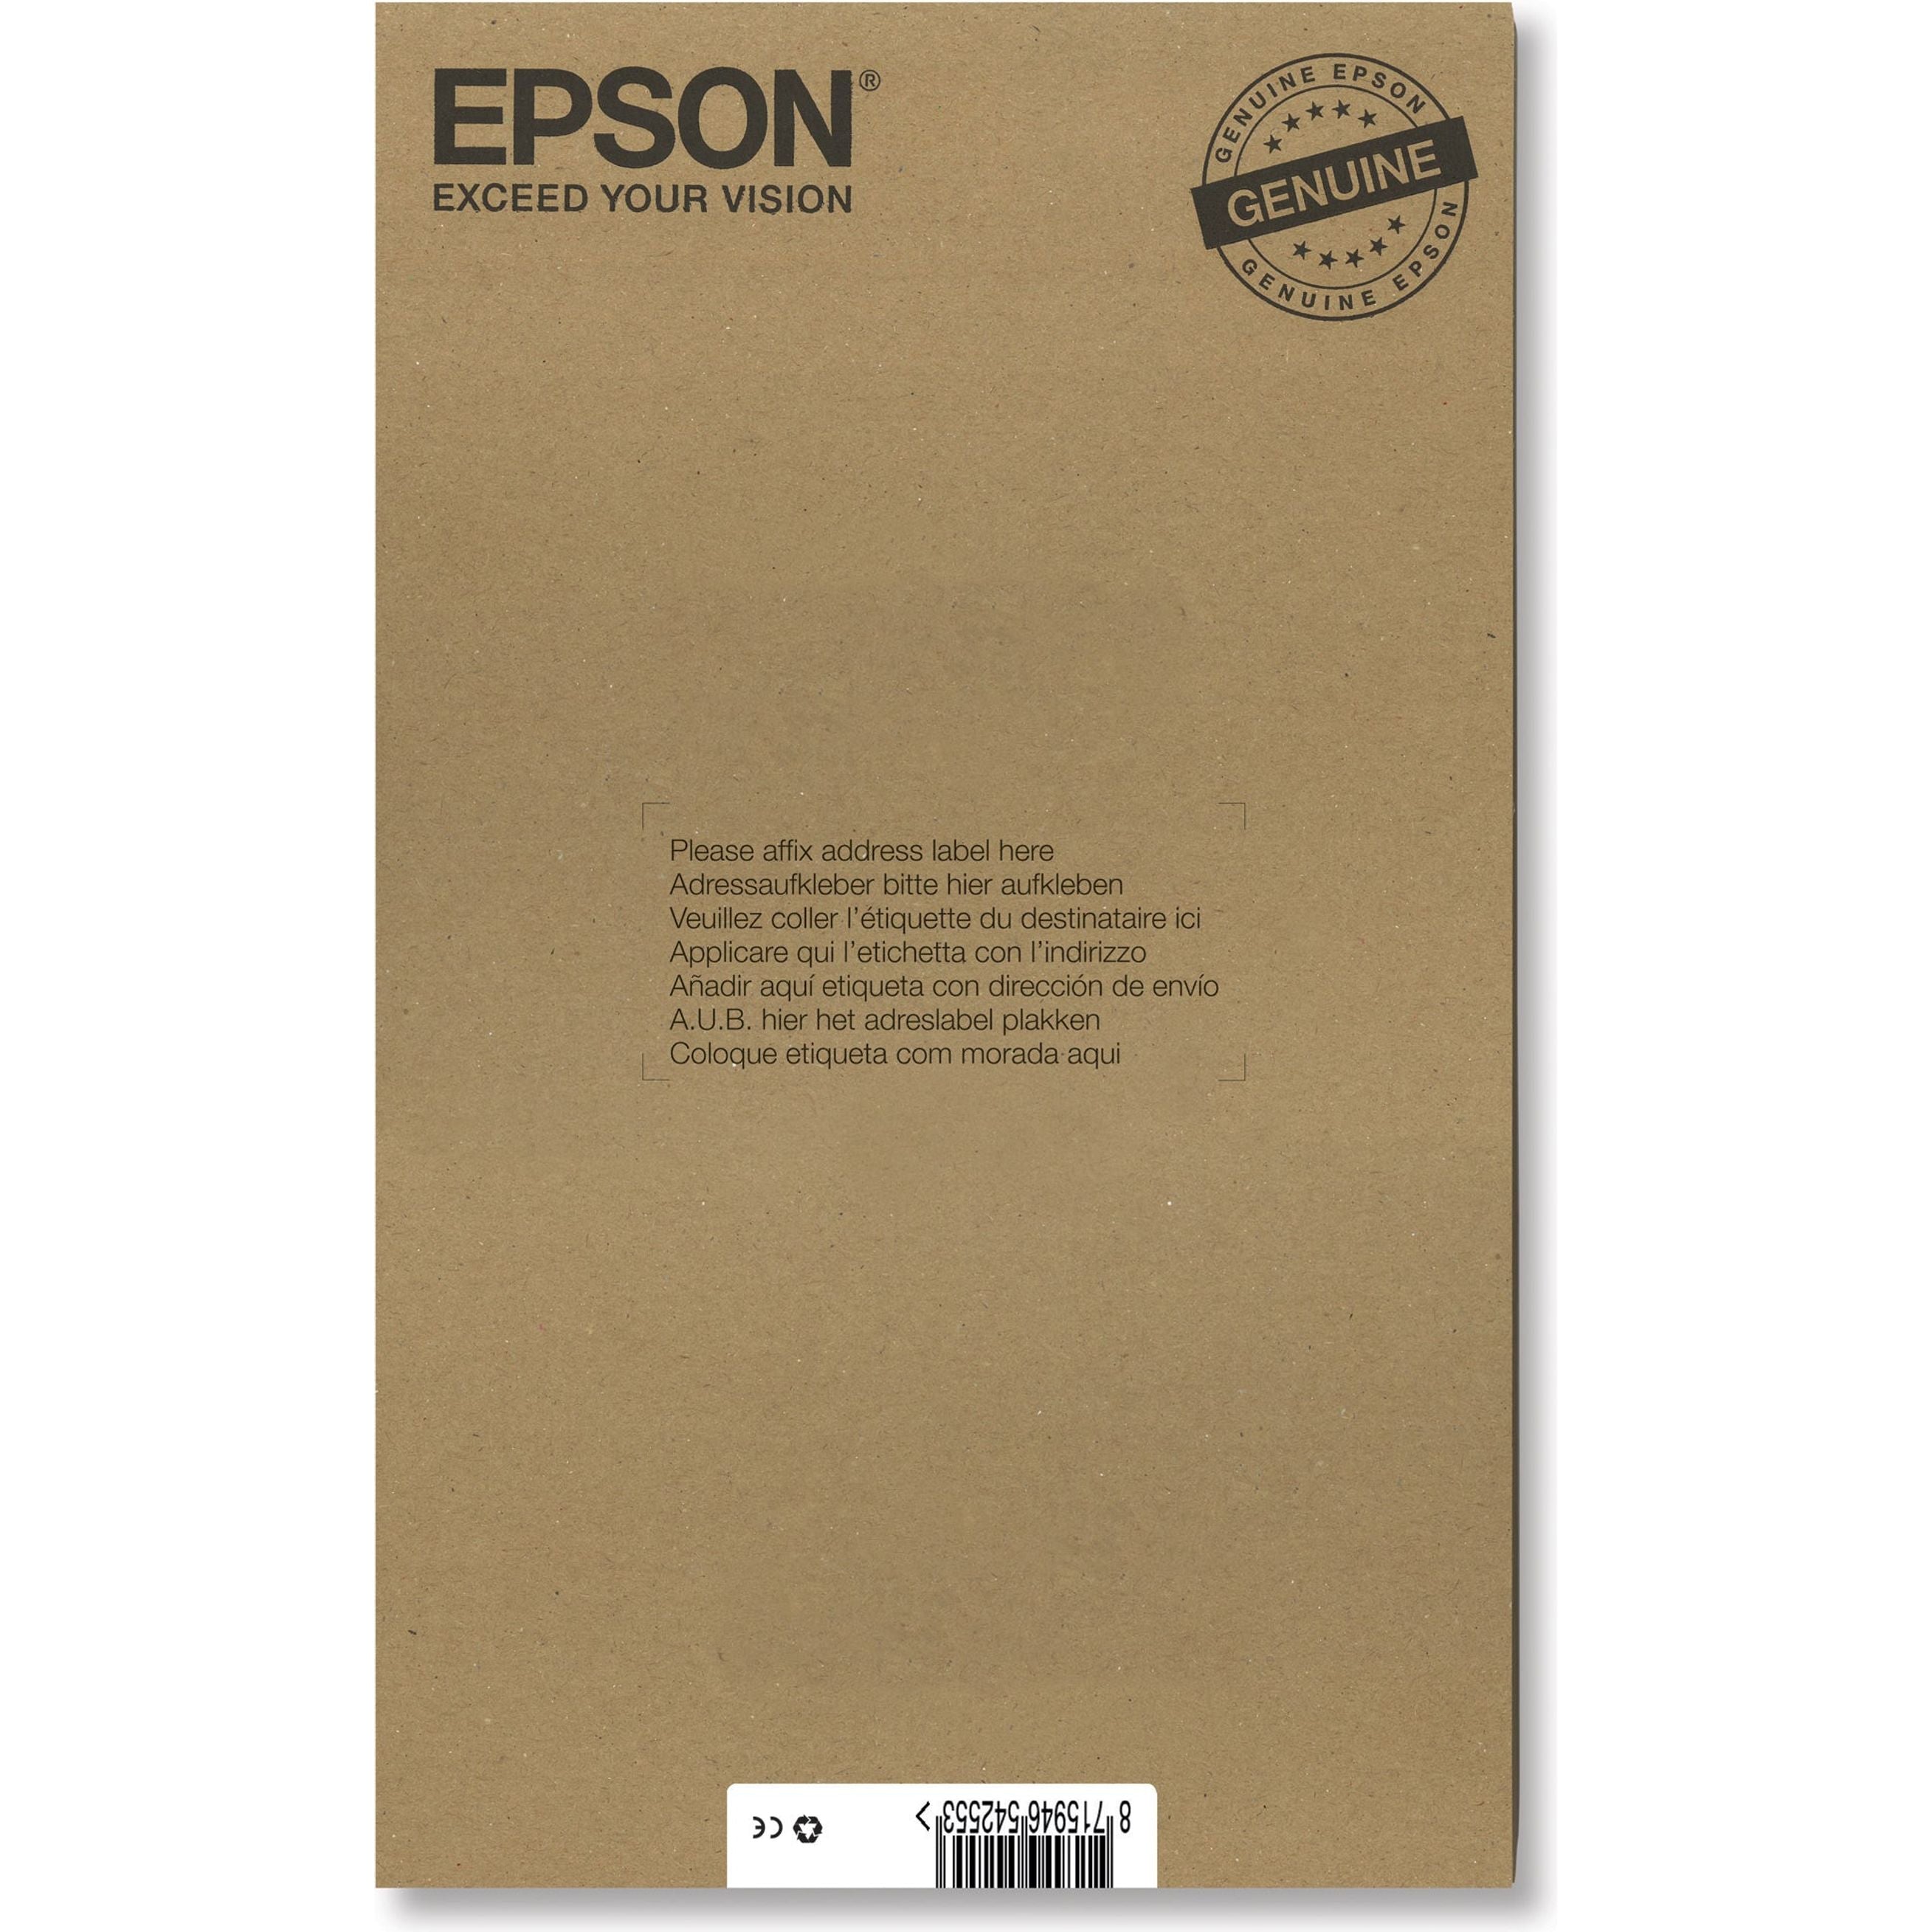 EPSON T0807 blekhylki svart blátt rautt gult photoblátt photorautt C13T08074510 Epson Stylus Photo R 265